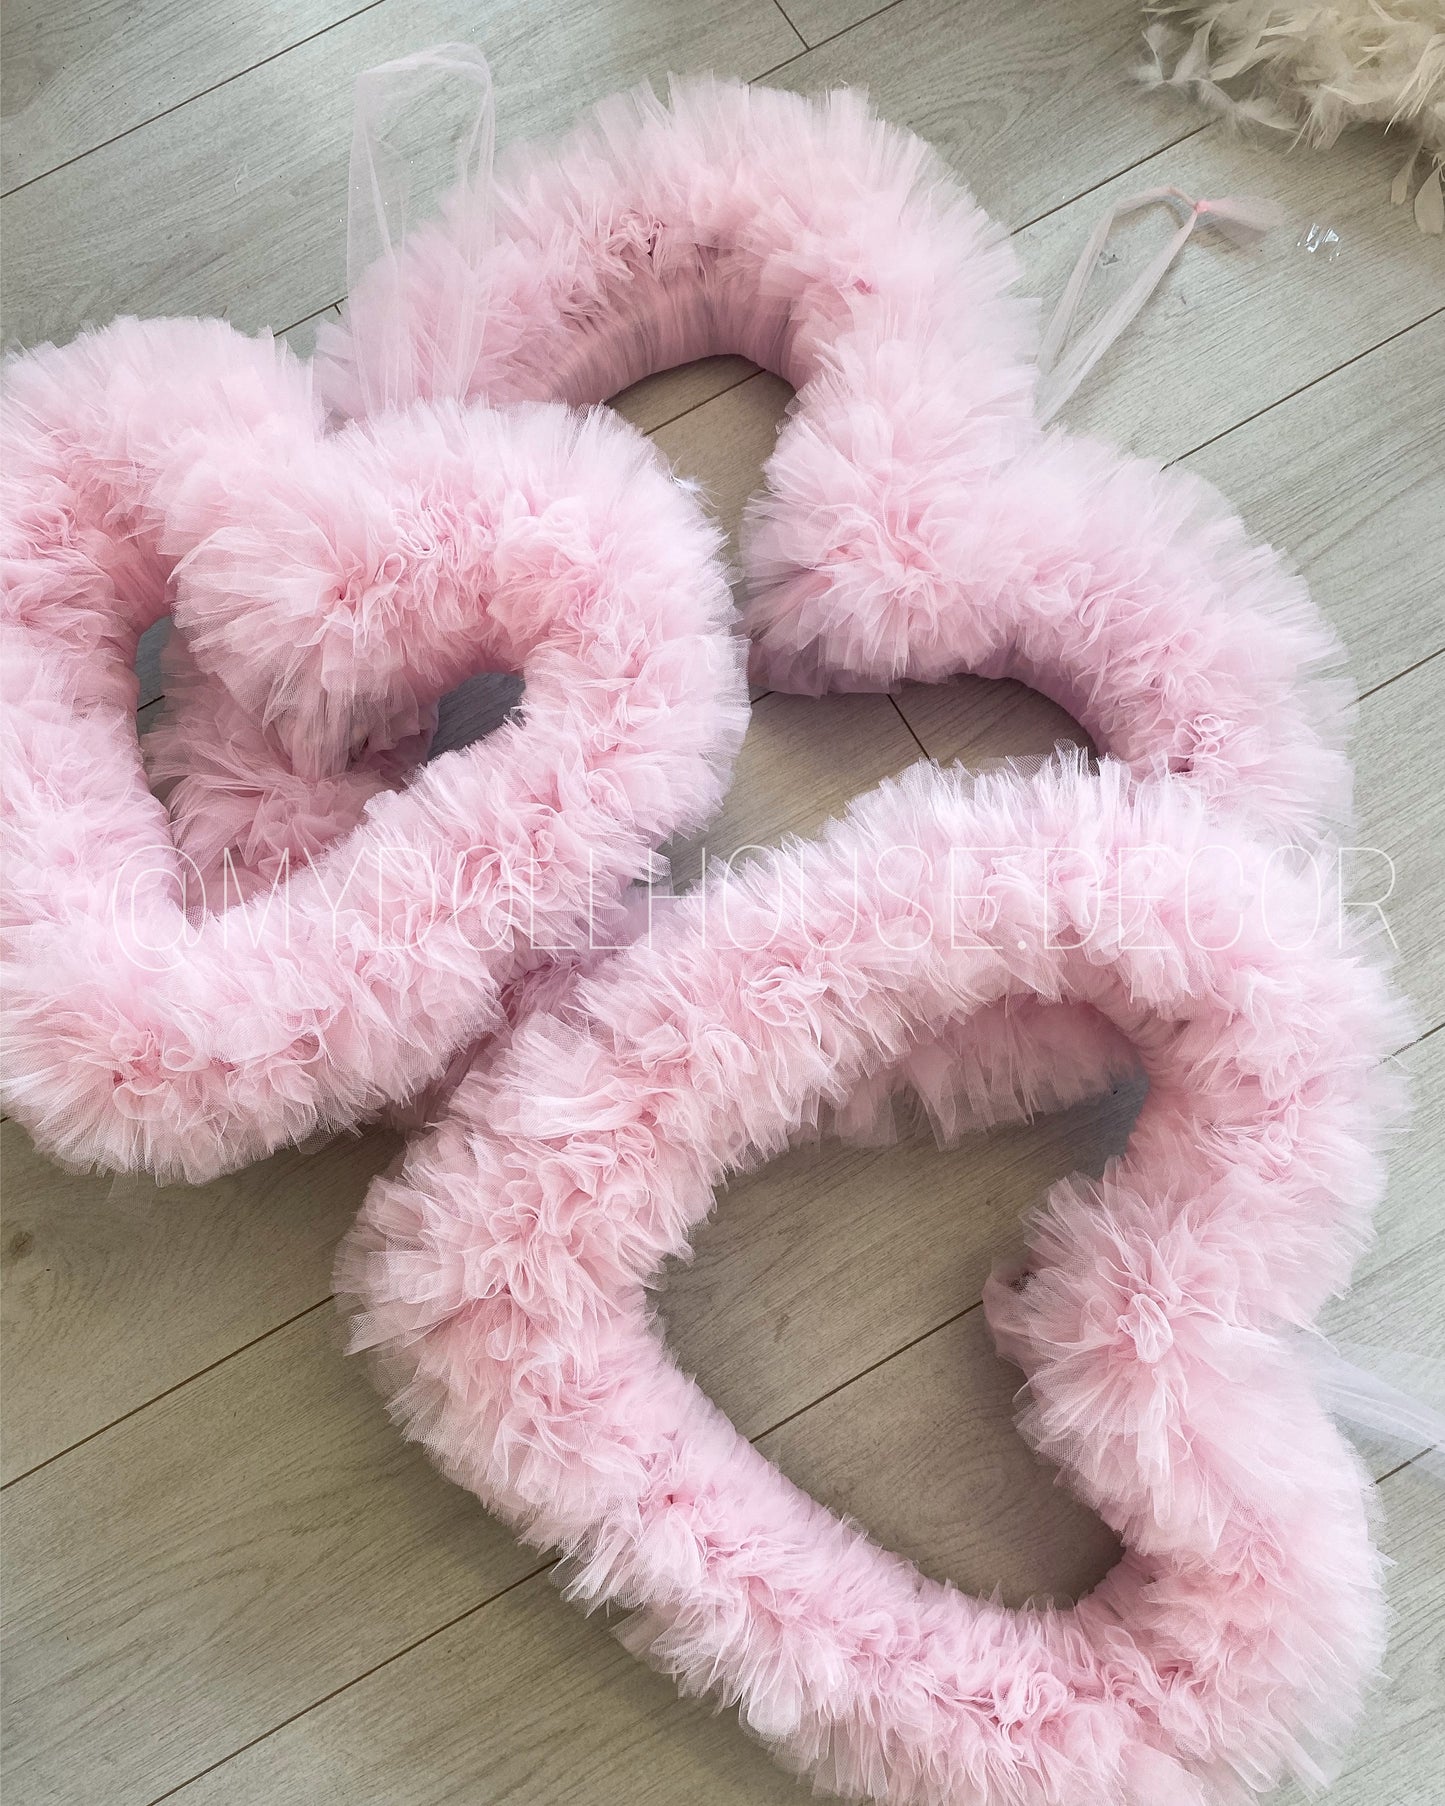 Pink Tutu Heart Wreath PRE ORDER 2-4 WEEKS